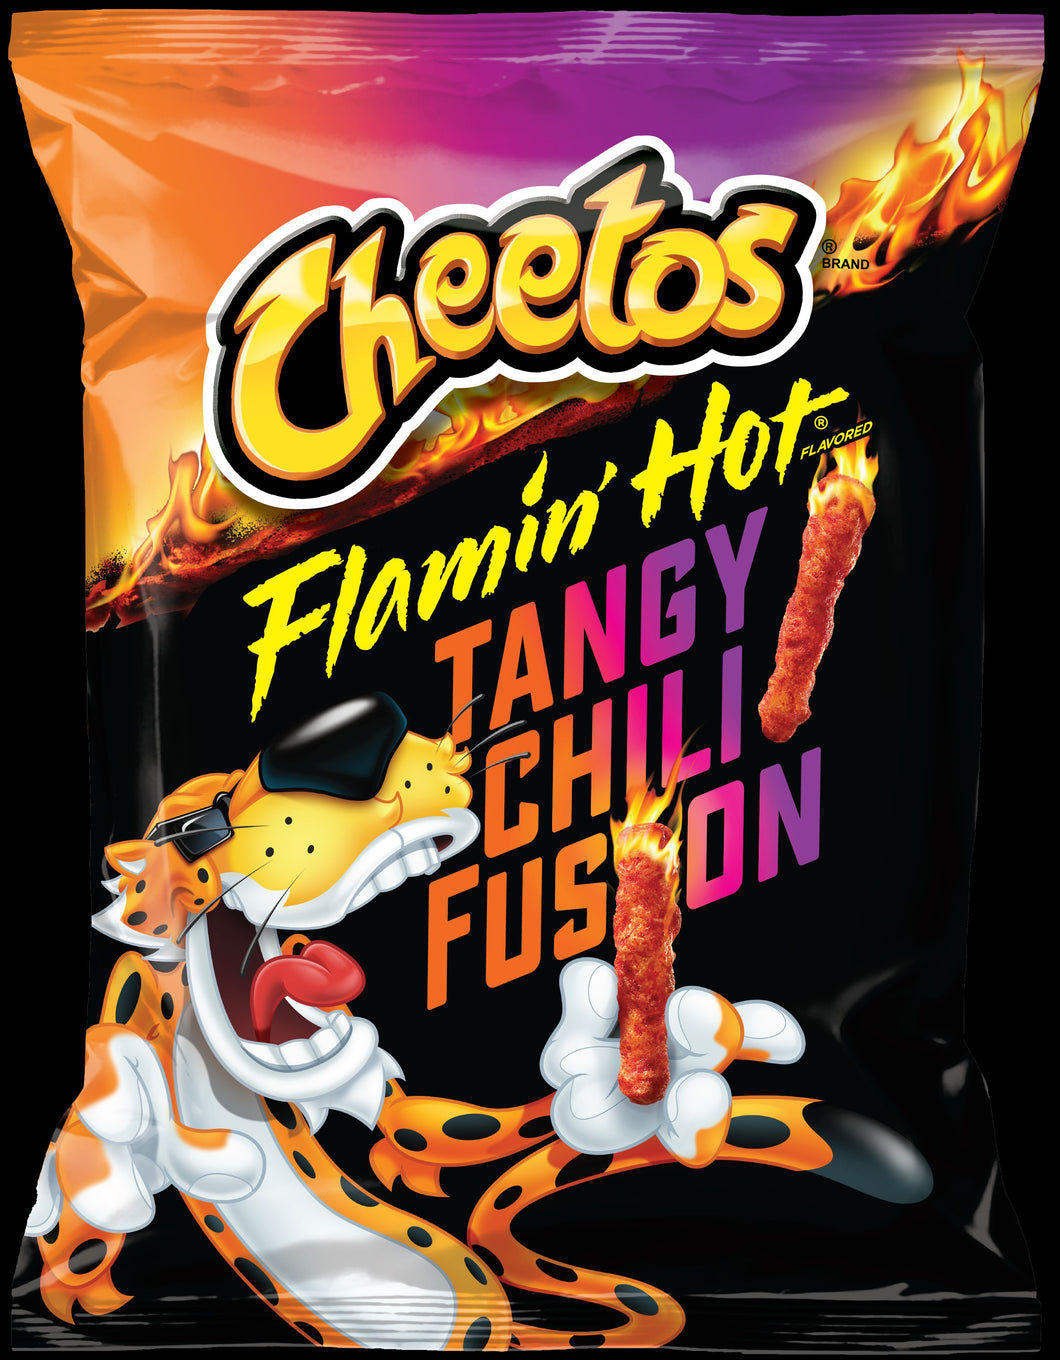 Cheetos Flamin Hot Tangy Chili Fusion